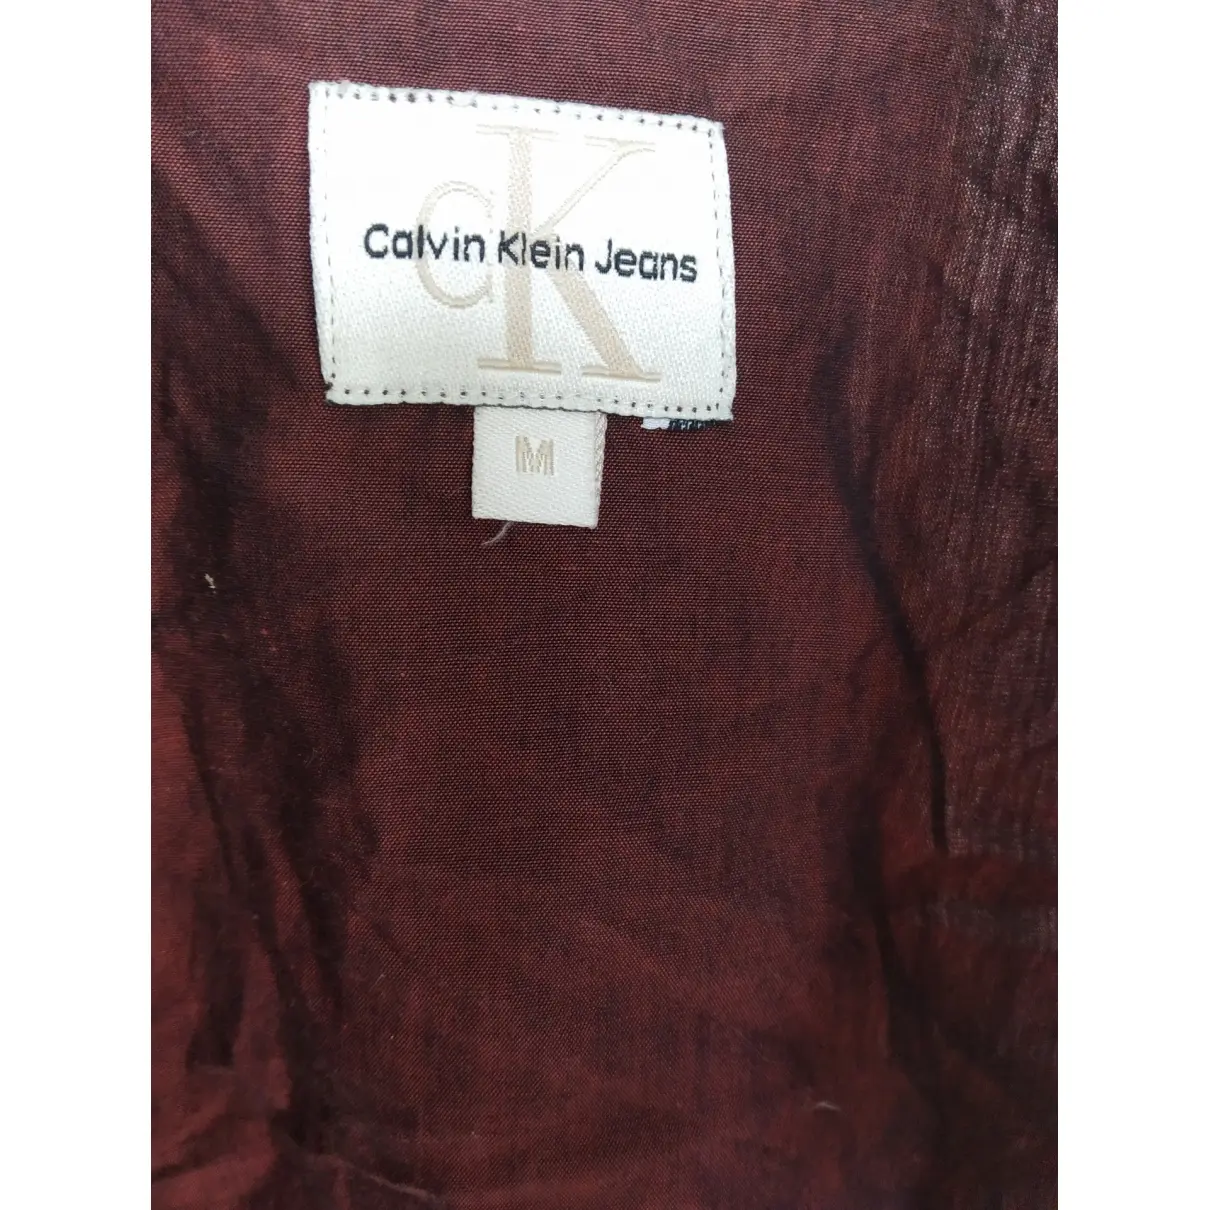 Buy Calvin Klein Shirt online